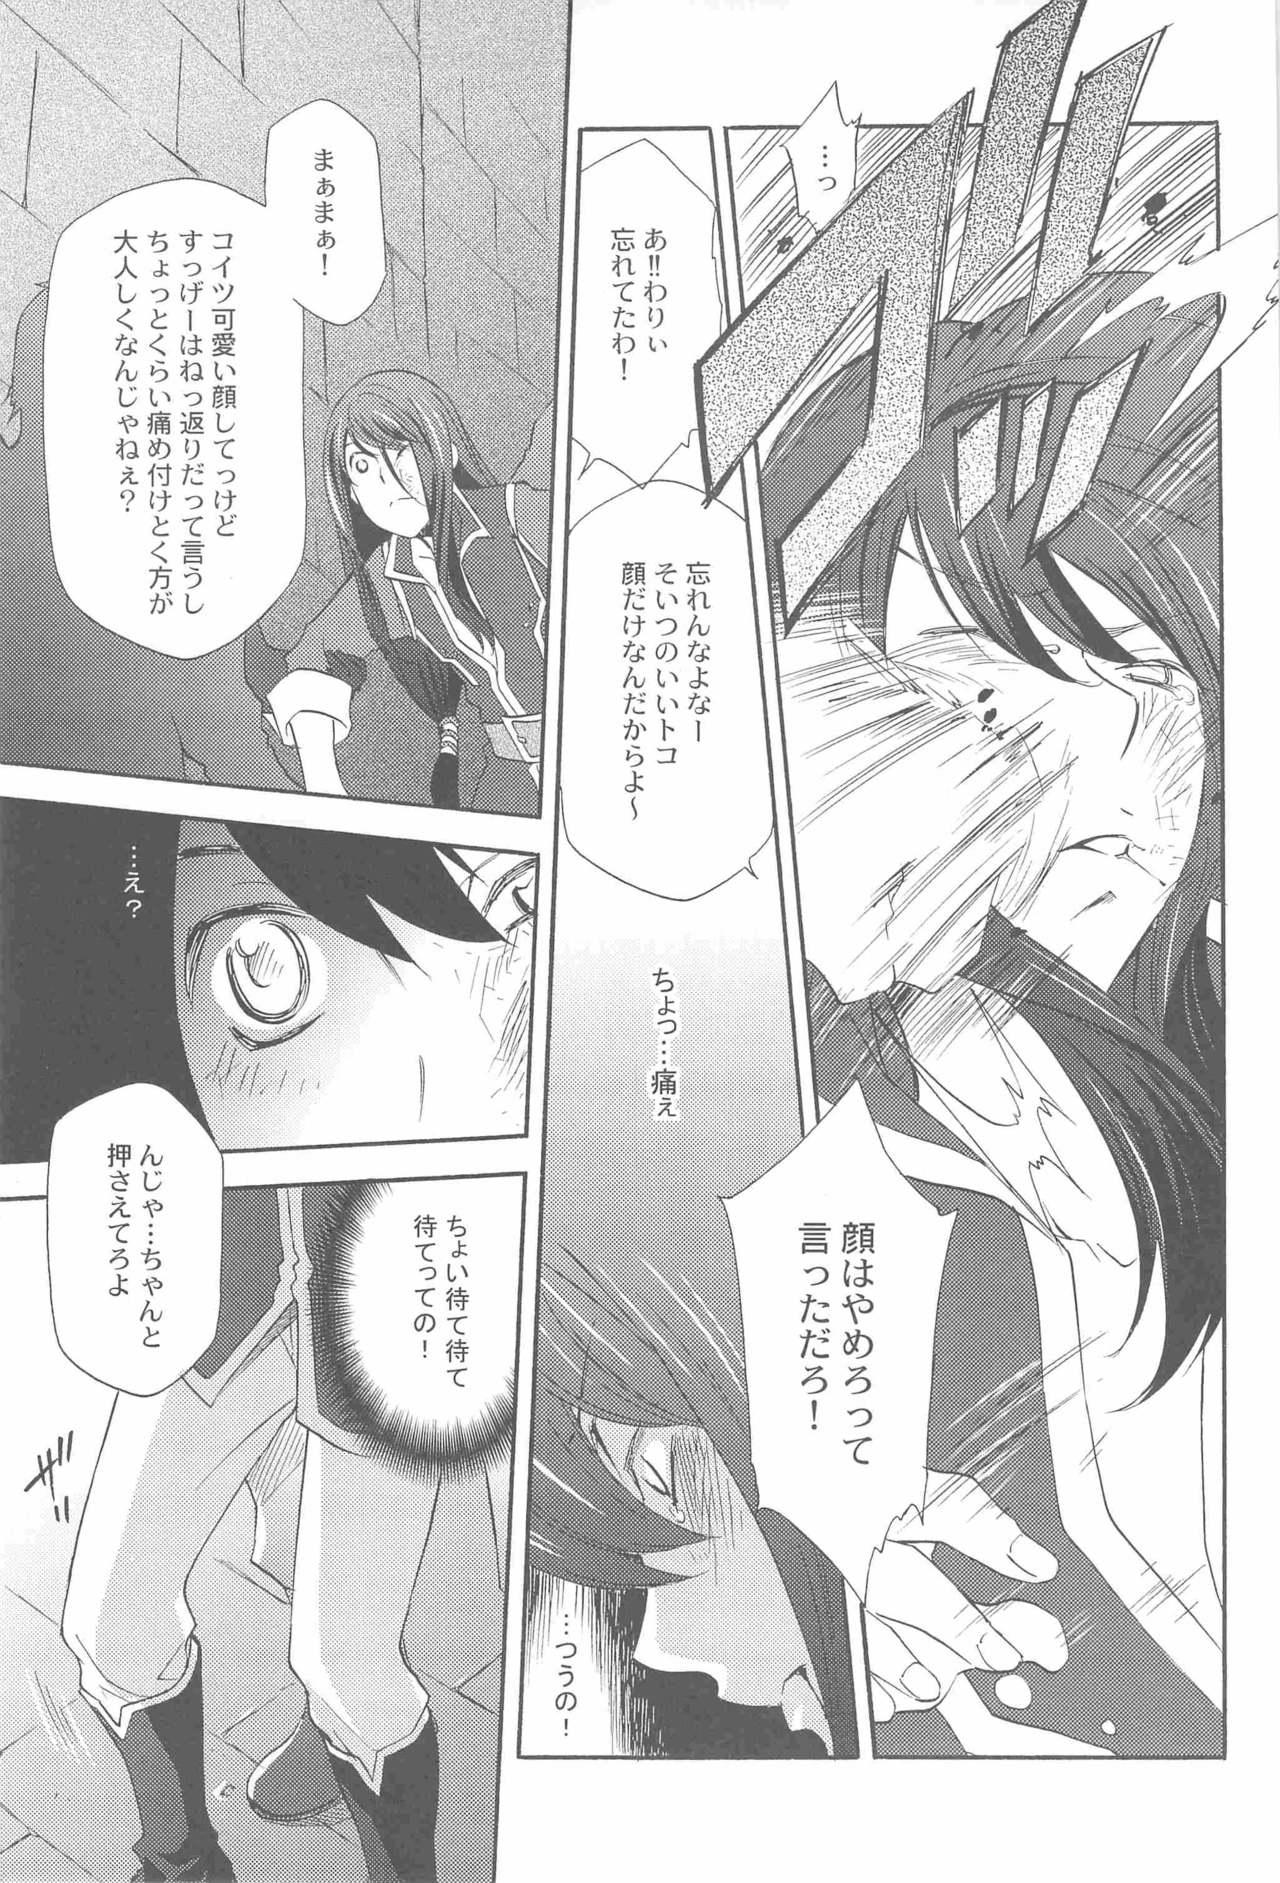 Strap On Teikoku no Inu Naburi - Tales of vesperia Uniform - Page 6